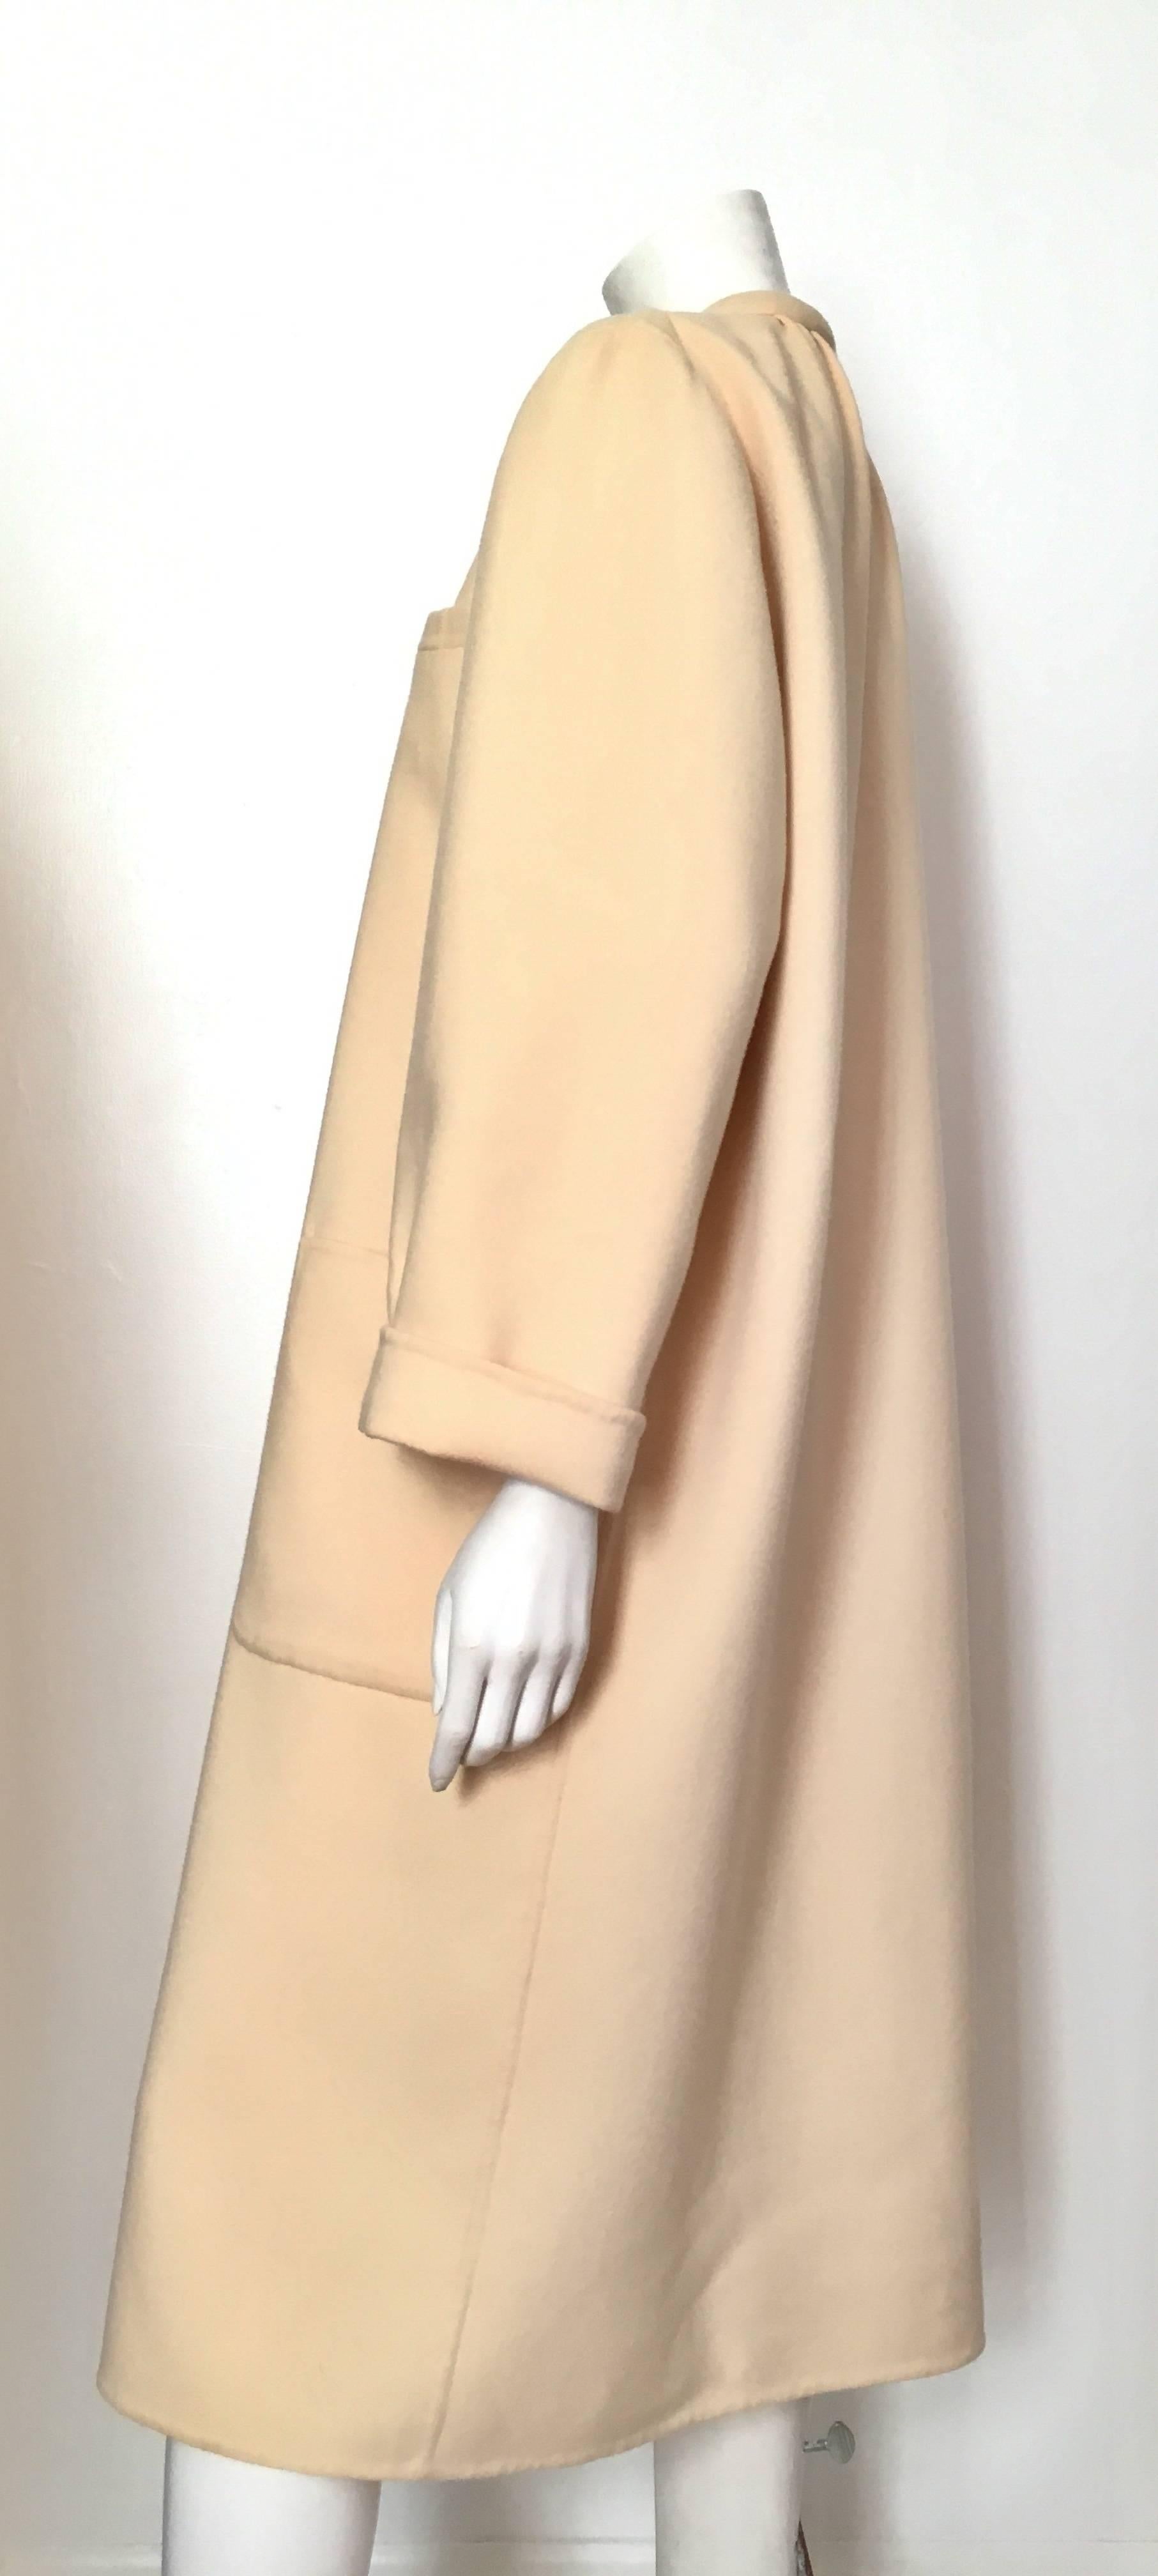 Women's or Men's Salvatore Ferragamo Cream Wool Cocoon Coat with Pockets Size 10